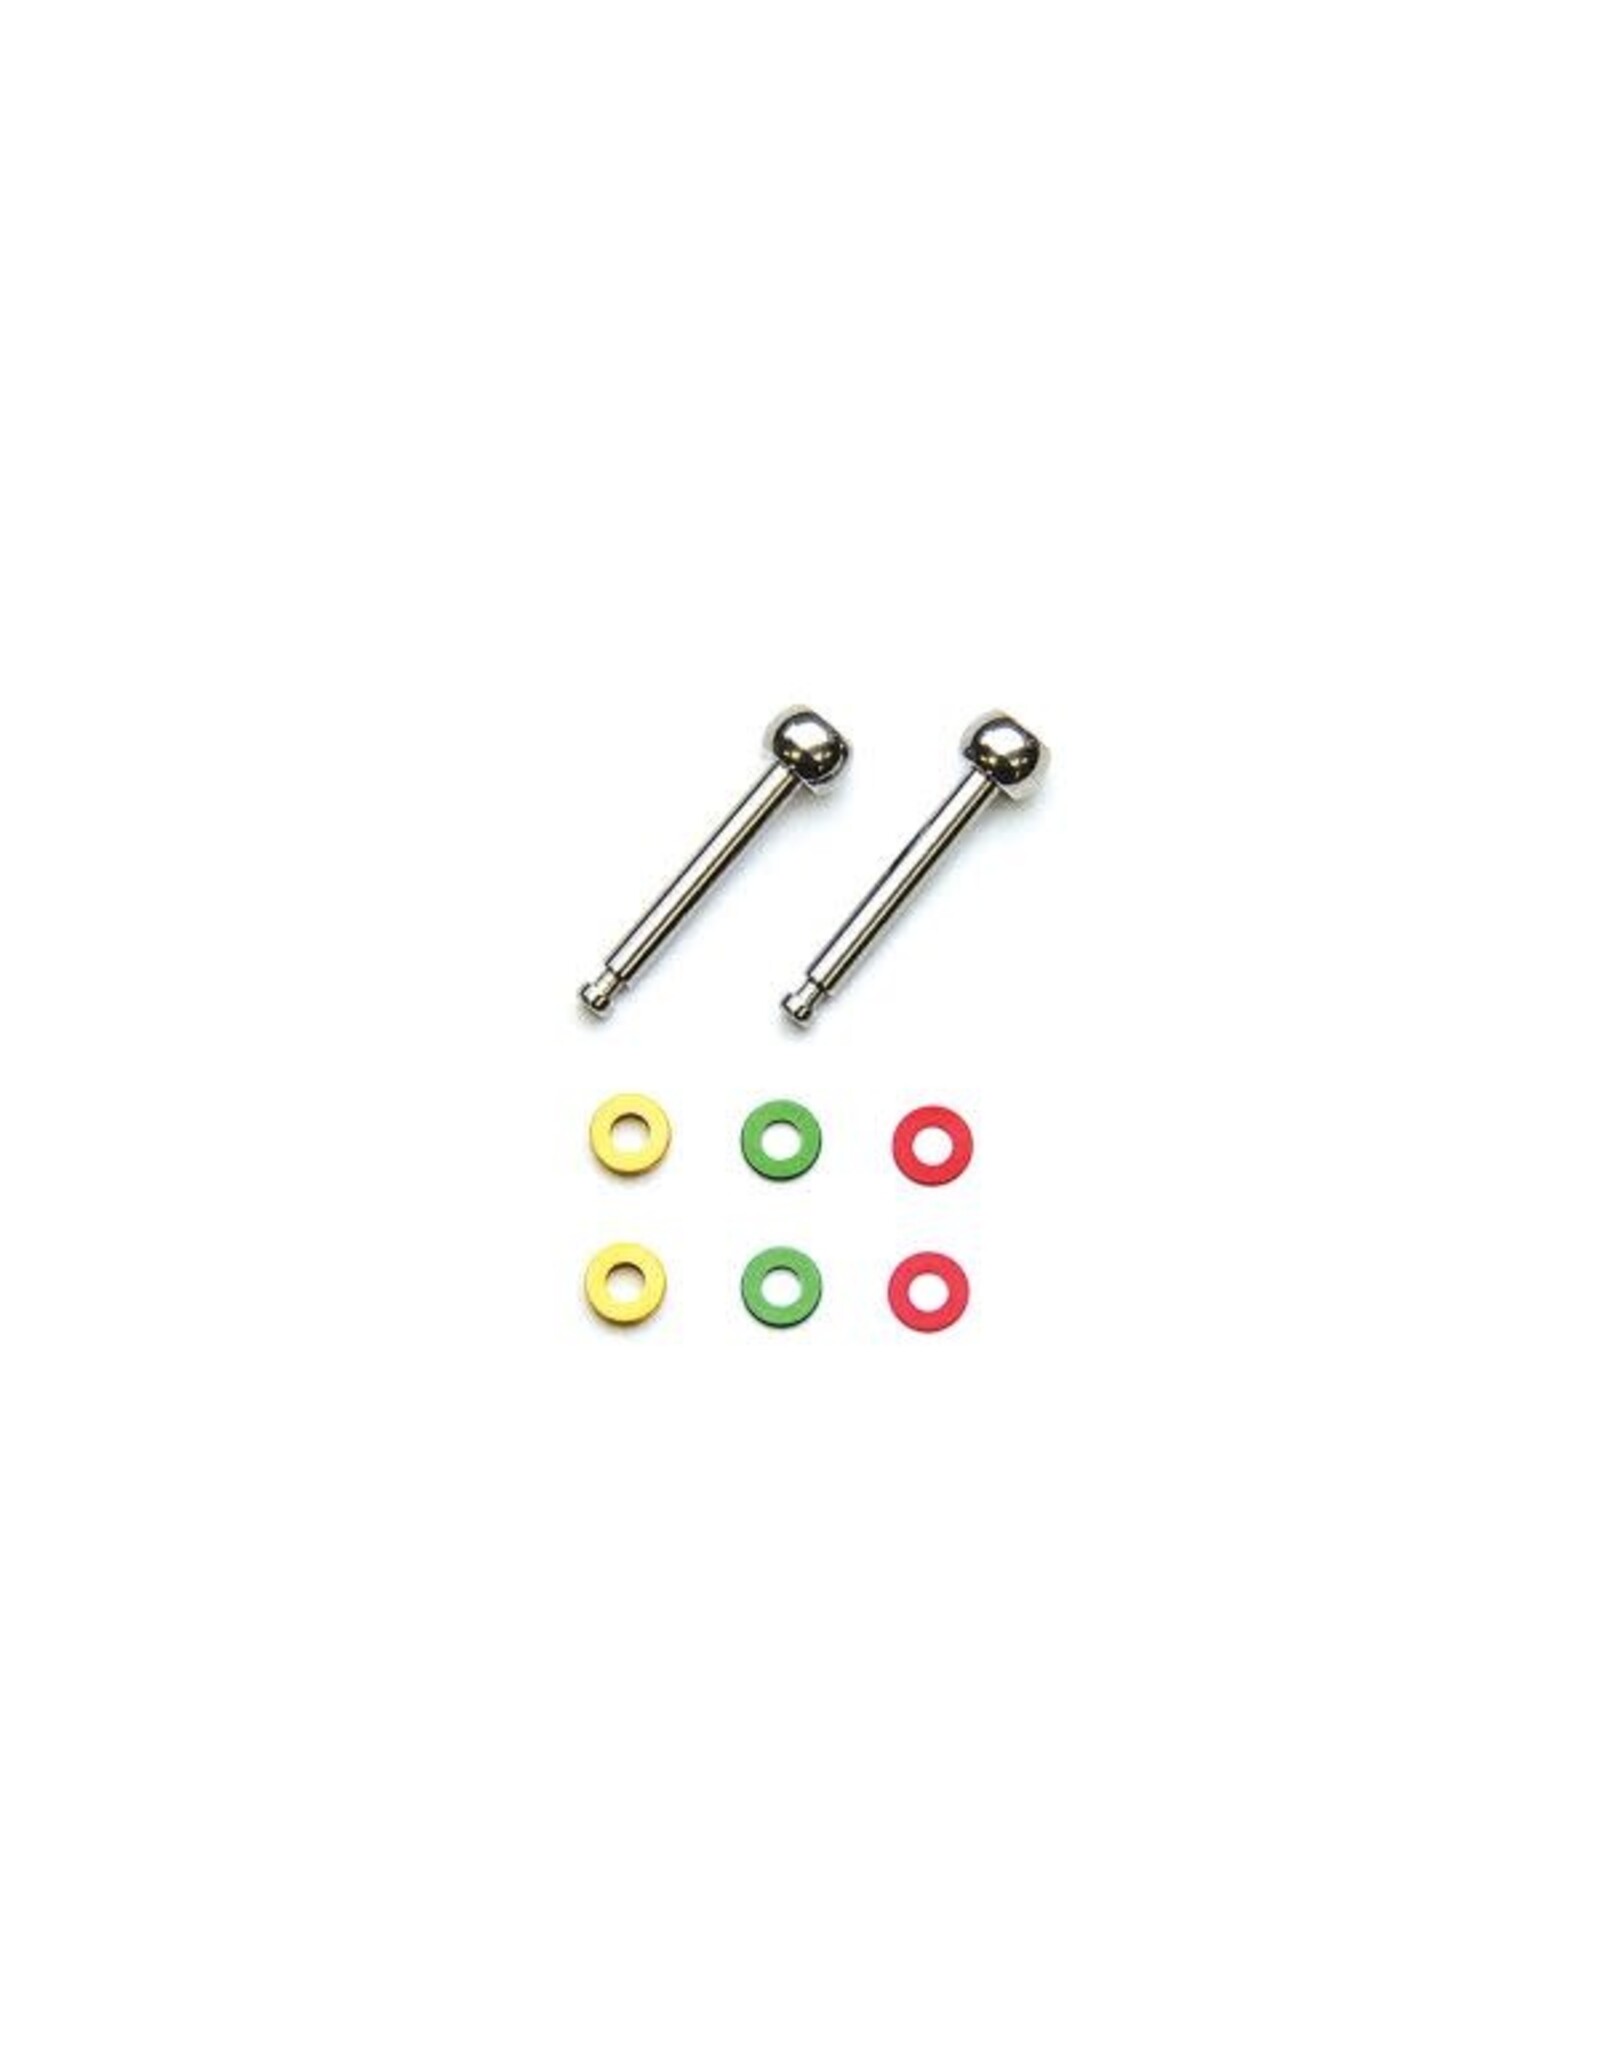 Kyosho Color Set of Long King Pin Ball (MR-03) MZW412-1 Kyosho Mini-Z